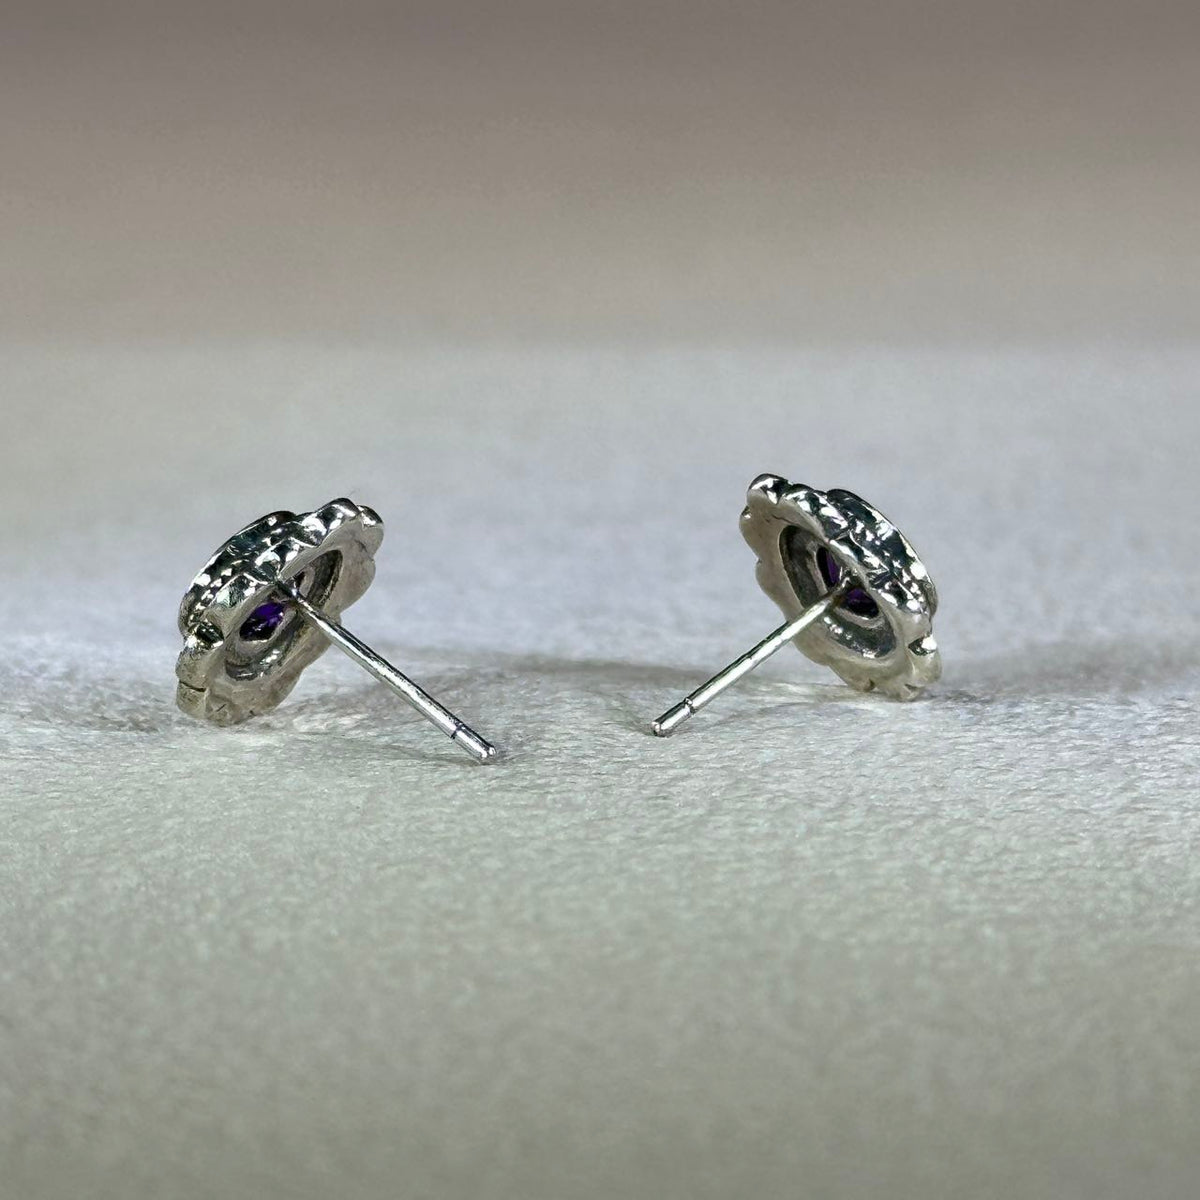 925 Silver Amethyst Love Heart Earrings 紫水晶爱心镶嵌银耳钉 – PG HANDMADE NZ